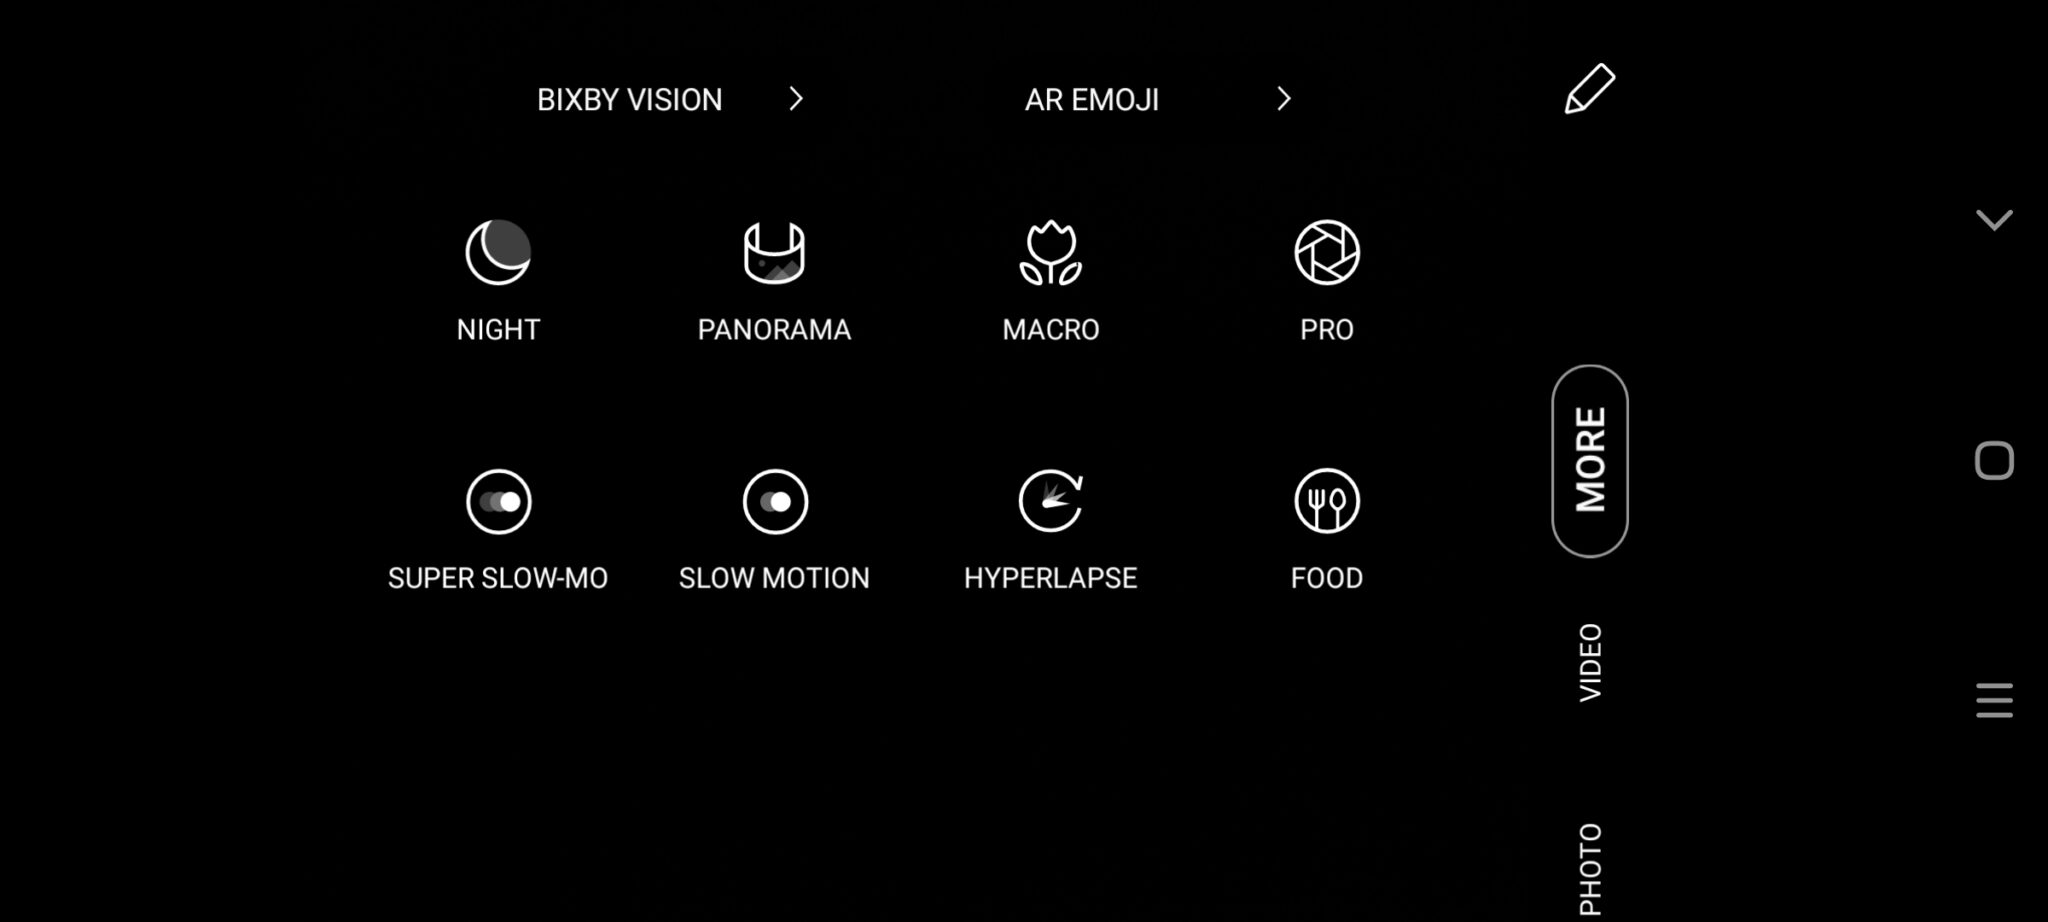 Samsung Galaxy A71 camera mode UI